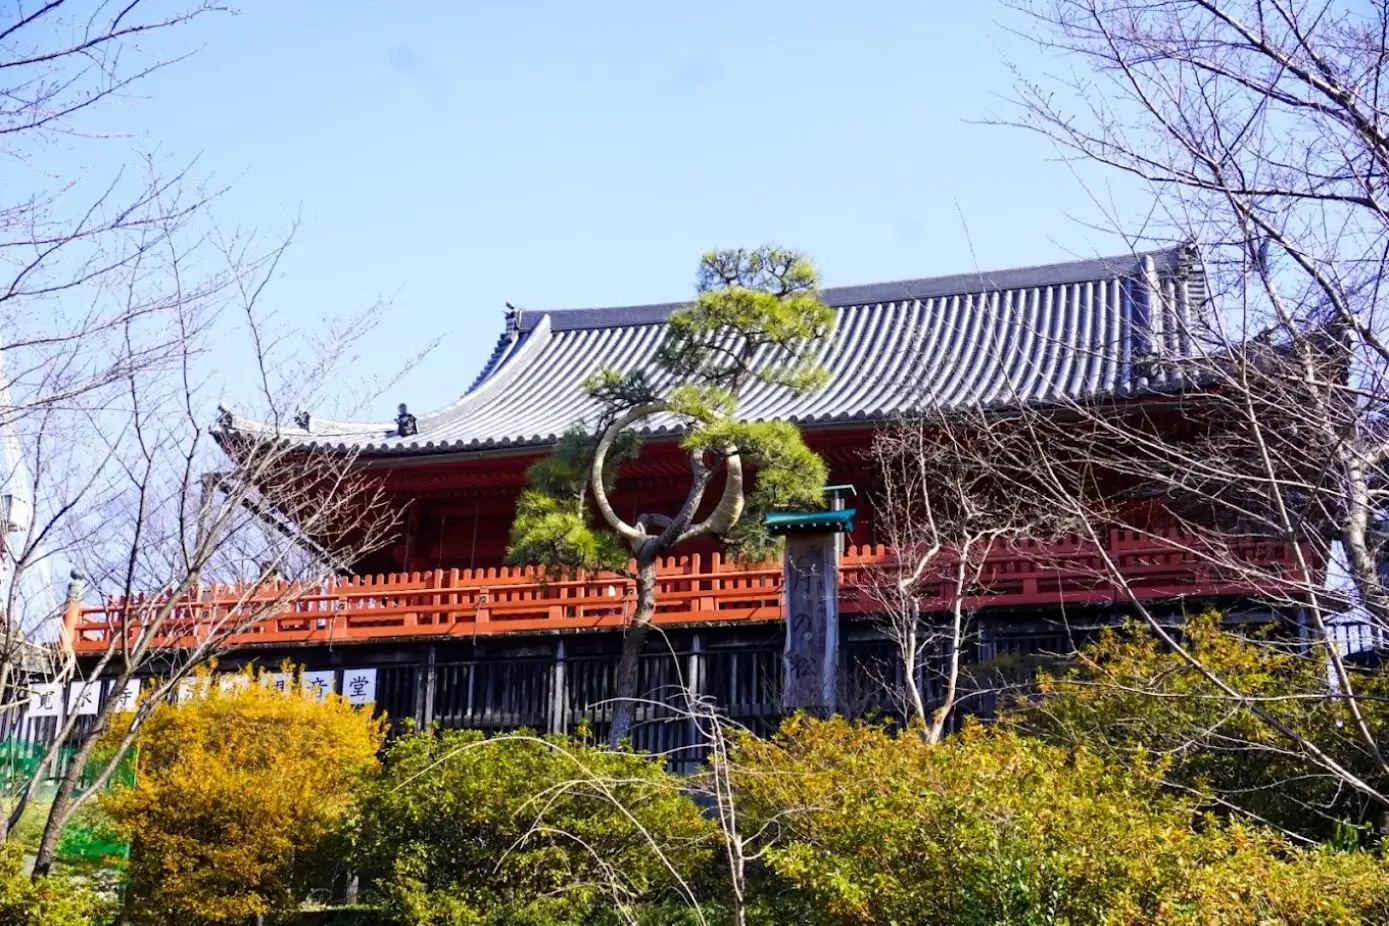 Kiyomizu Kannon-do Temple